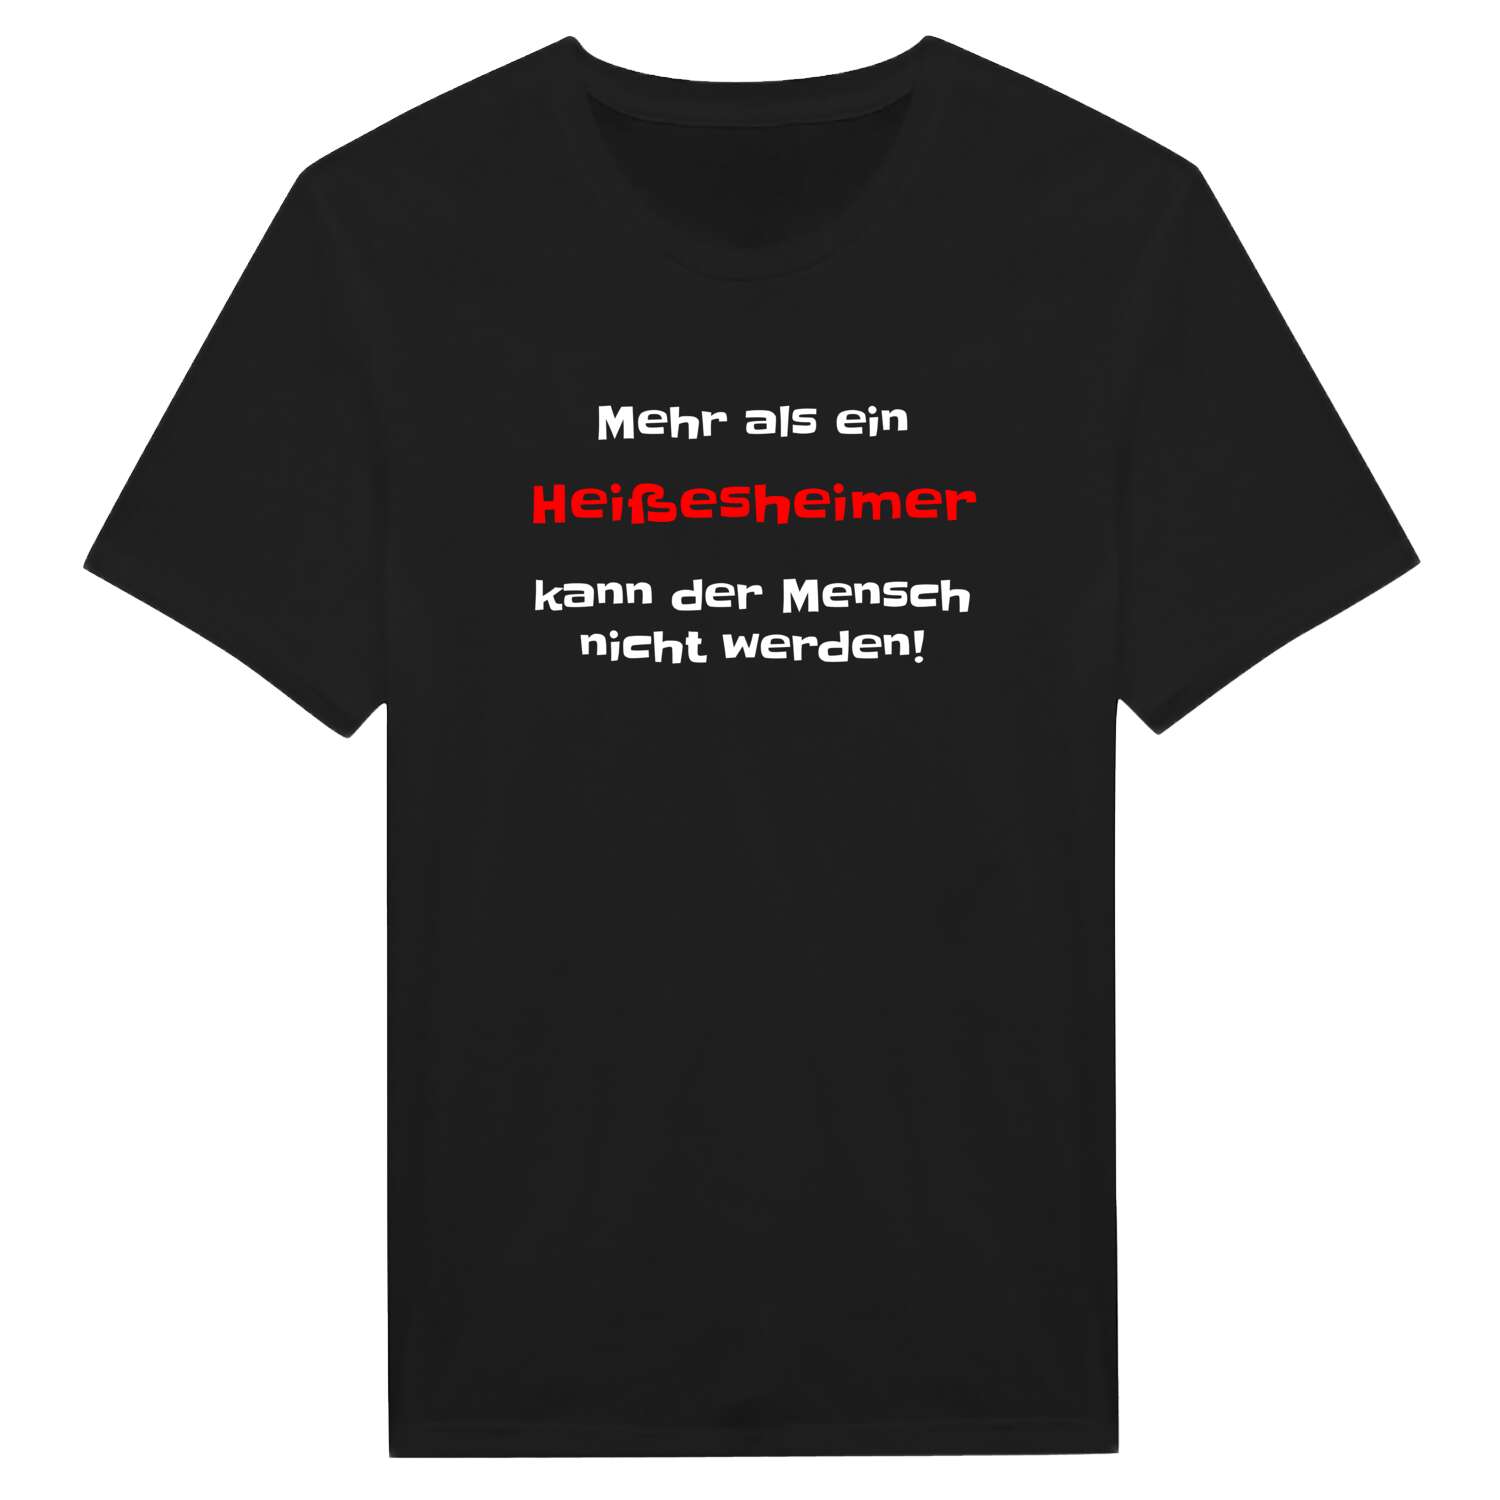 Heißesheim T-Shirt »Mehr als ein«